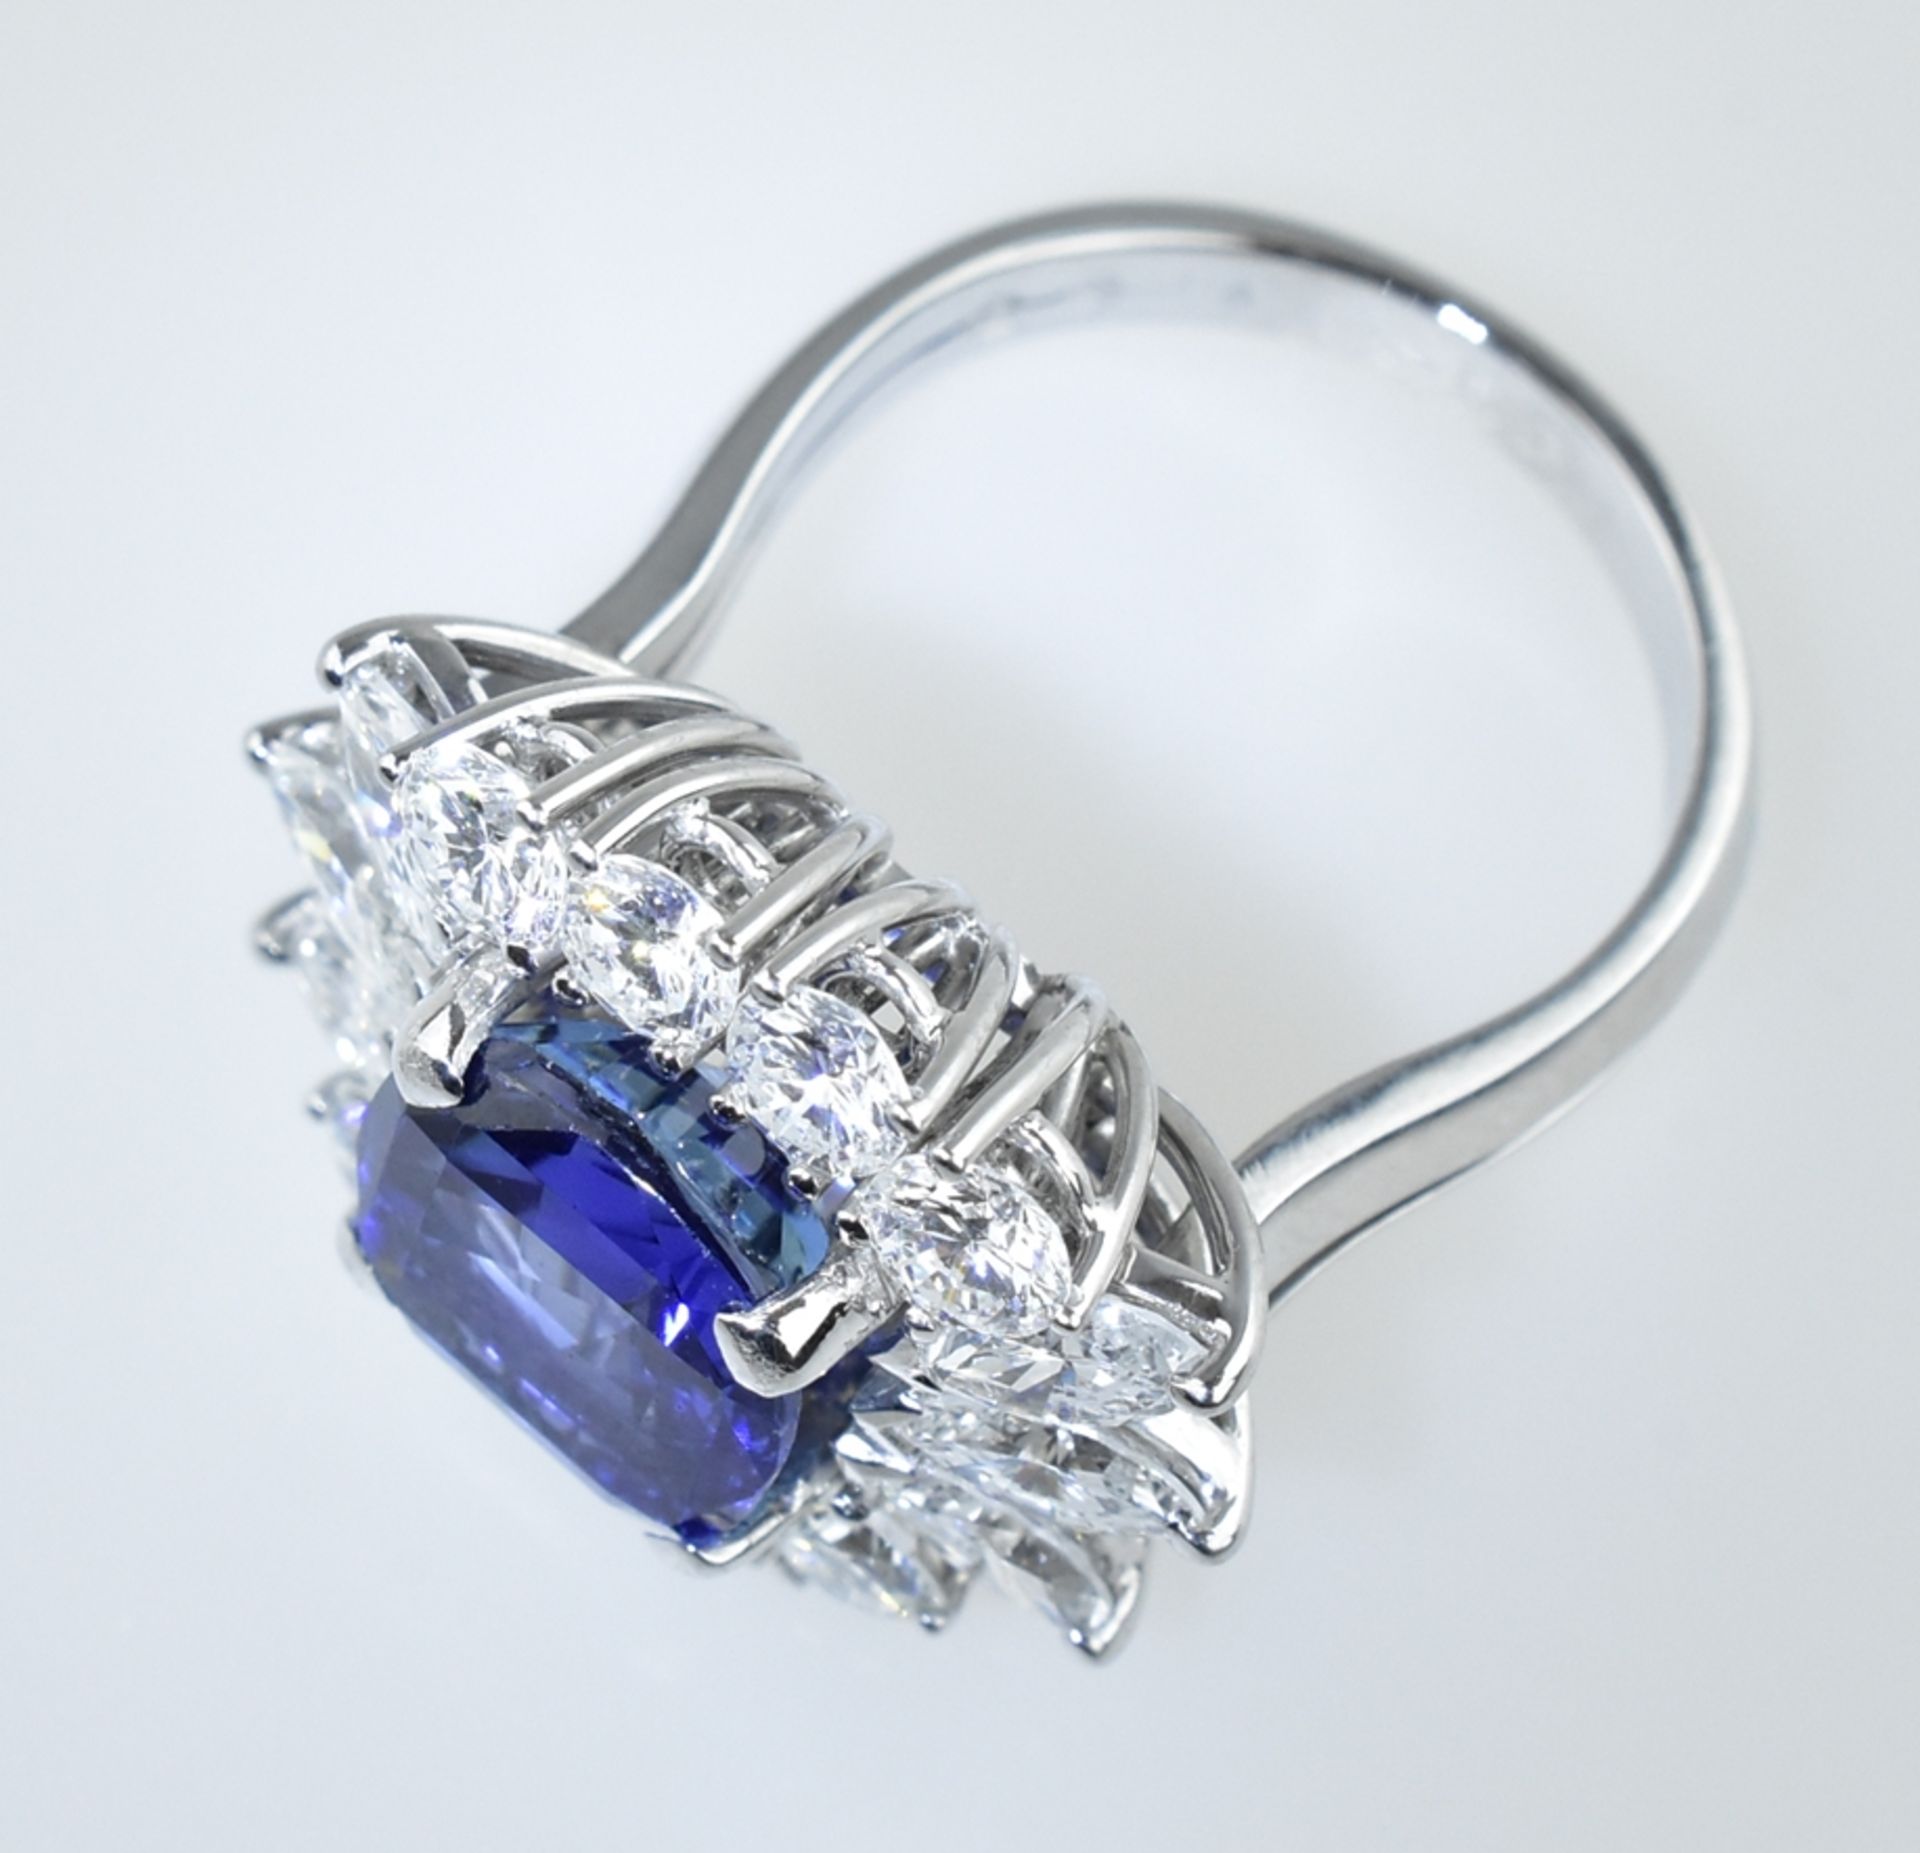 Außergewöhnlicher Ring mit Burma Saphir. Saphir von 5,94 ct. in leuchtendem Blau. Kissenschliff. Ed - Bild 2 aus 3